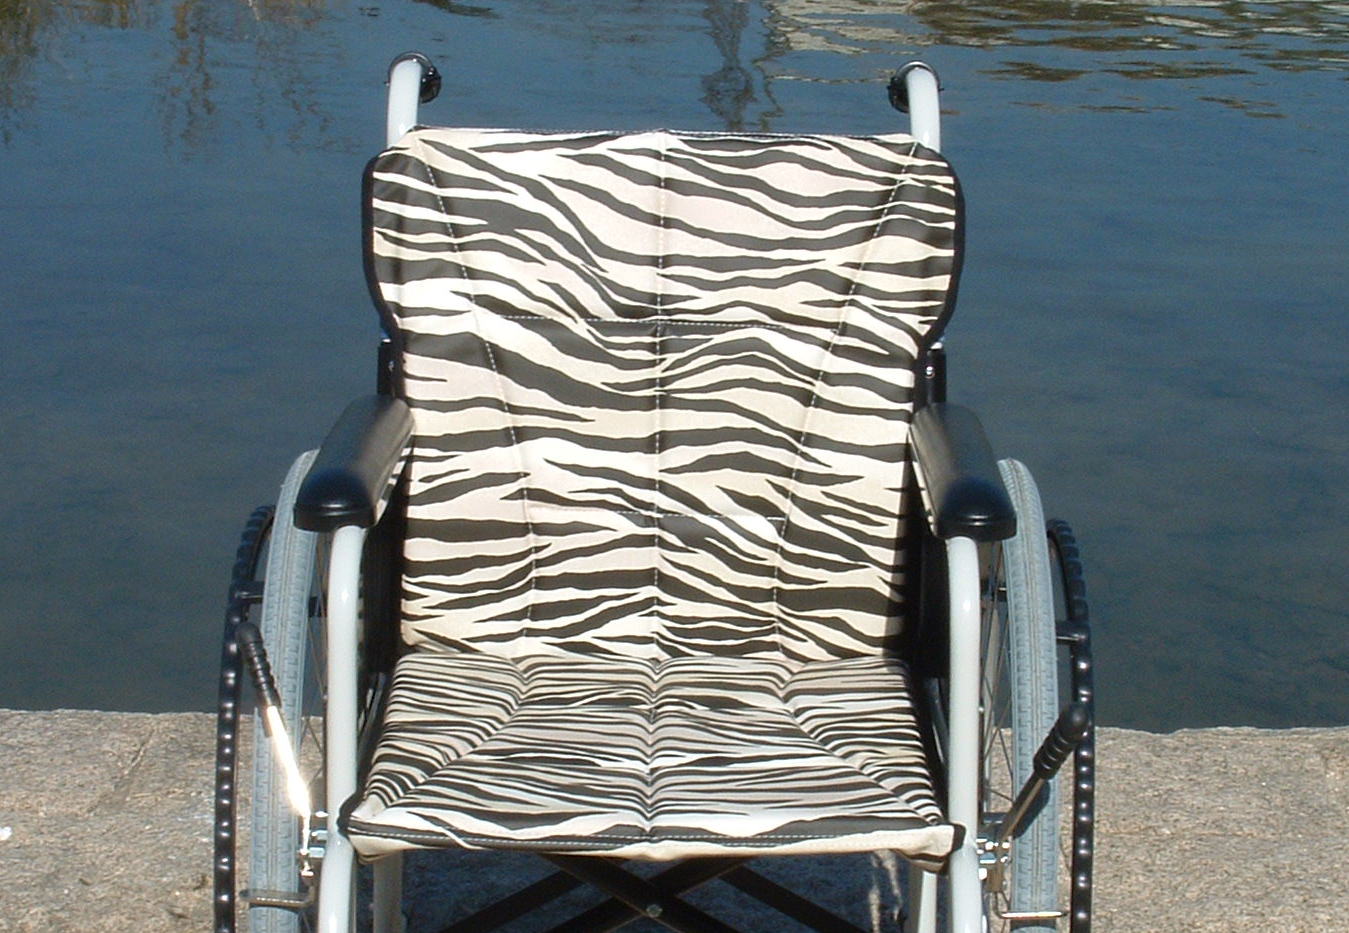 「こんなド派手な車椅子は見た事がございません。」FIGOが誇る斬新なデザインは『ゼブラ』、そうシマウマカラーです。大胆でワイルド！そしてオシャレ着感覚で扱えるとてもスタイリッシュなデザインです。